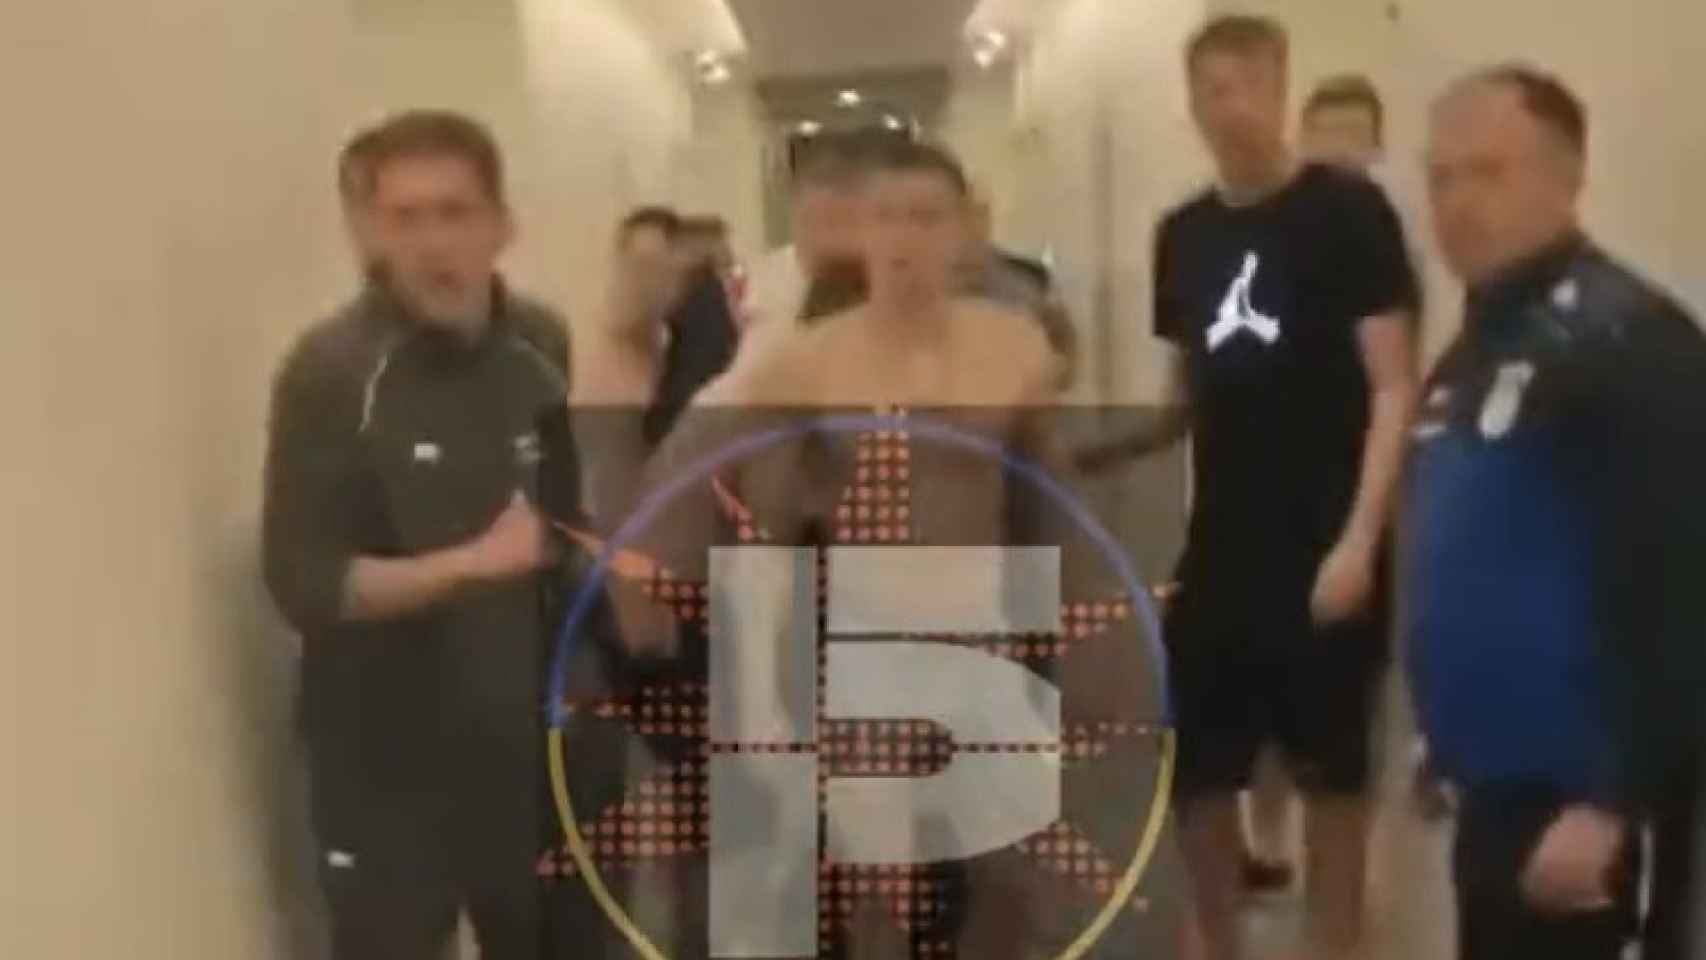 Jugadores del Yaroslavl Shinnik ruso y el FC Minaj ucraniano se pelean en un hotel